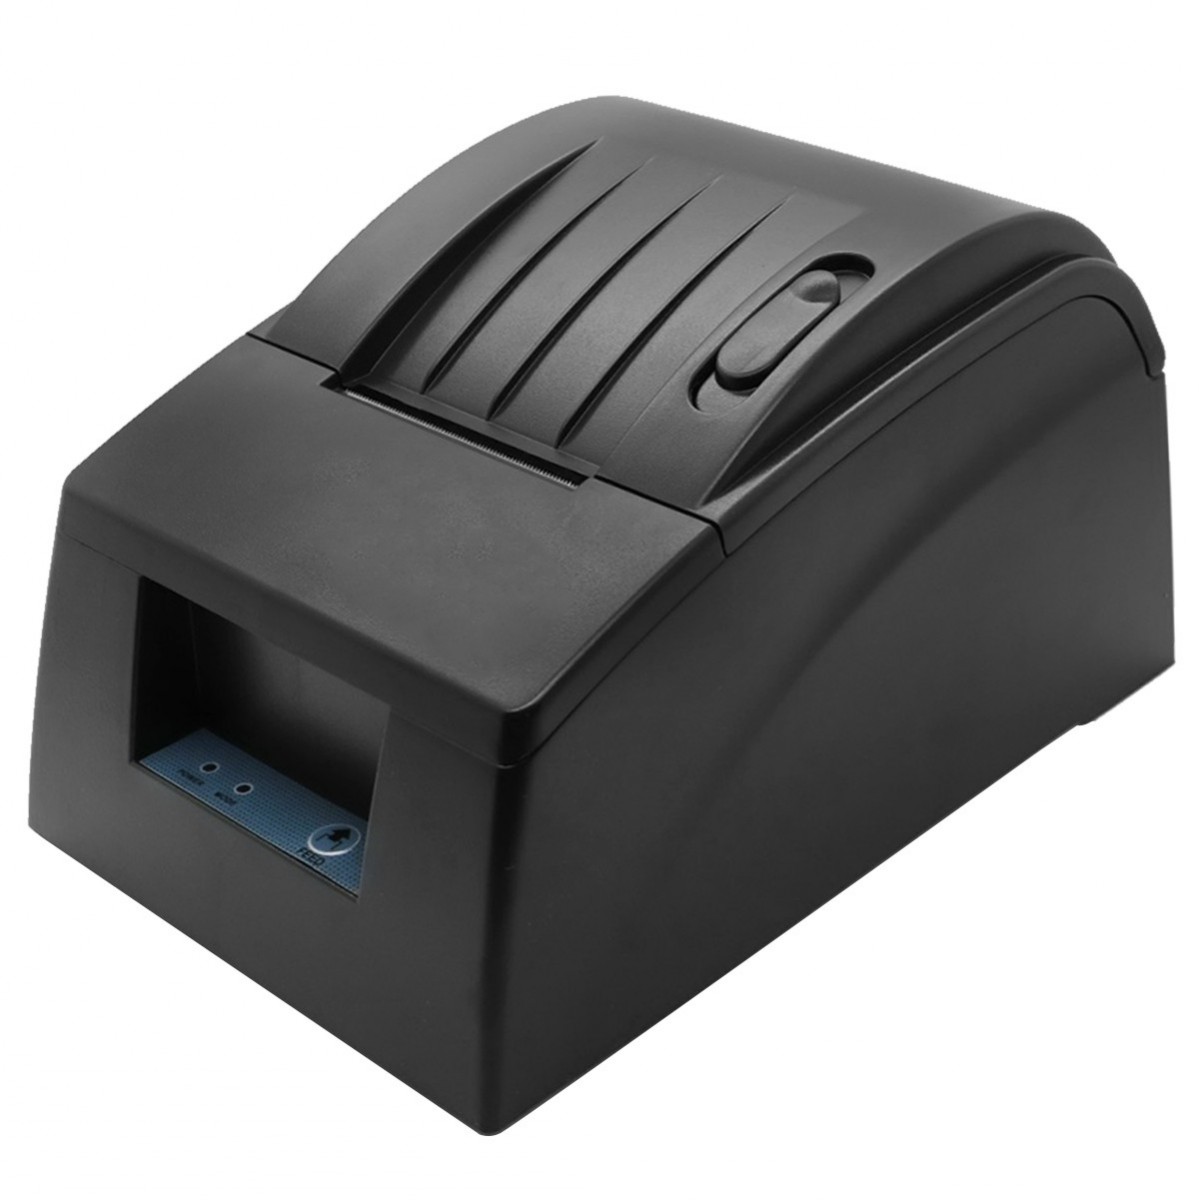 Voxlink 58mm Thermal Receipt Printer,USB port interface thermal printer For restaurant supermarket,black